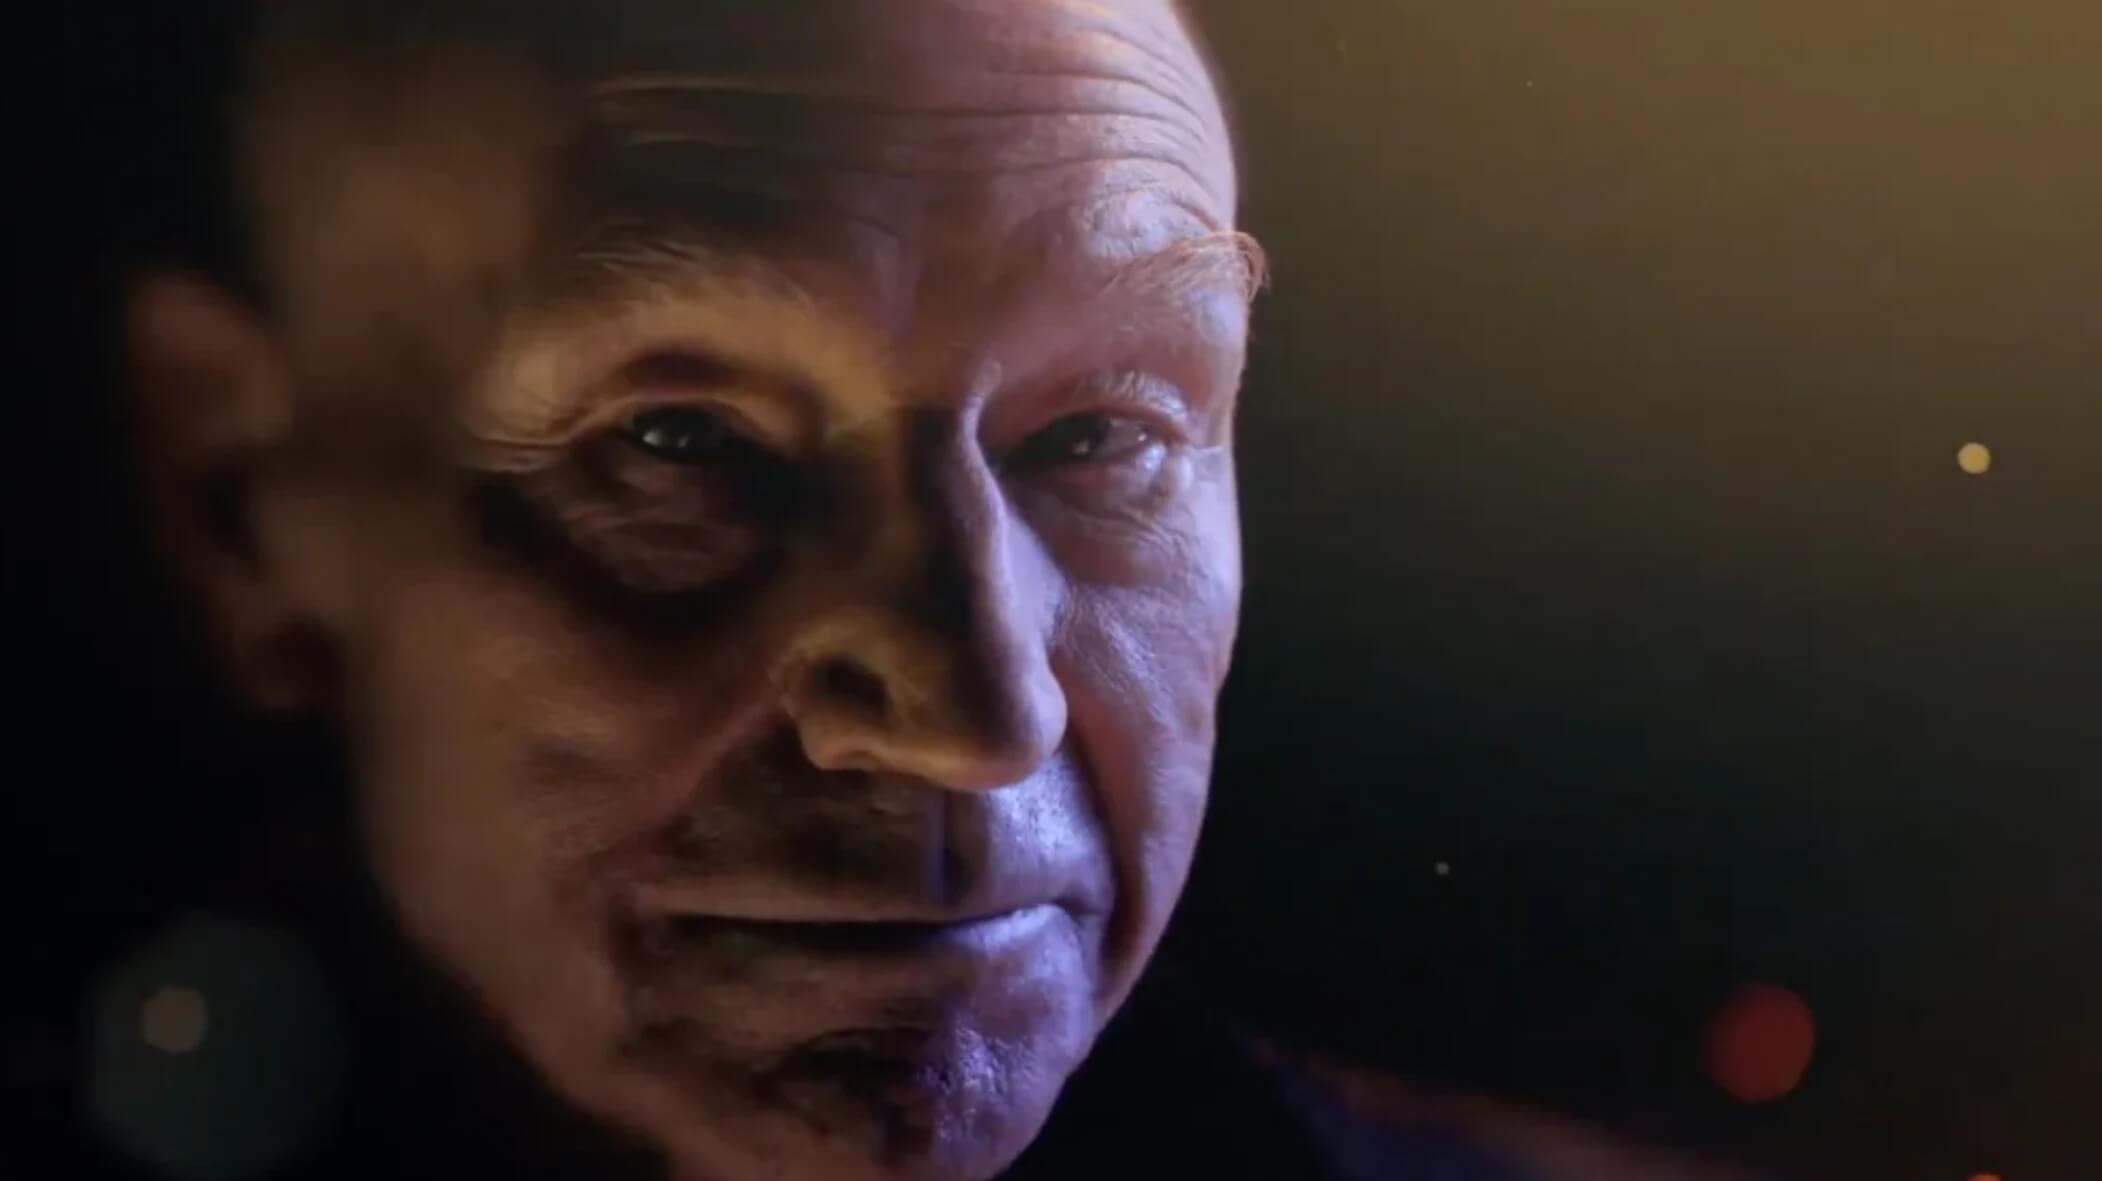 Patrick Stewart as Jean-Luc Picard in Star Trek: Picard season 3 teaser trailer